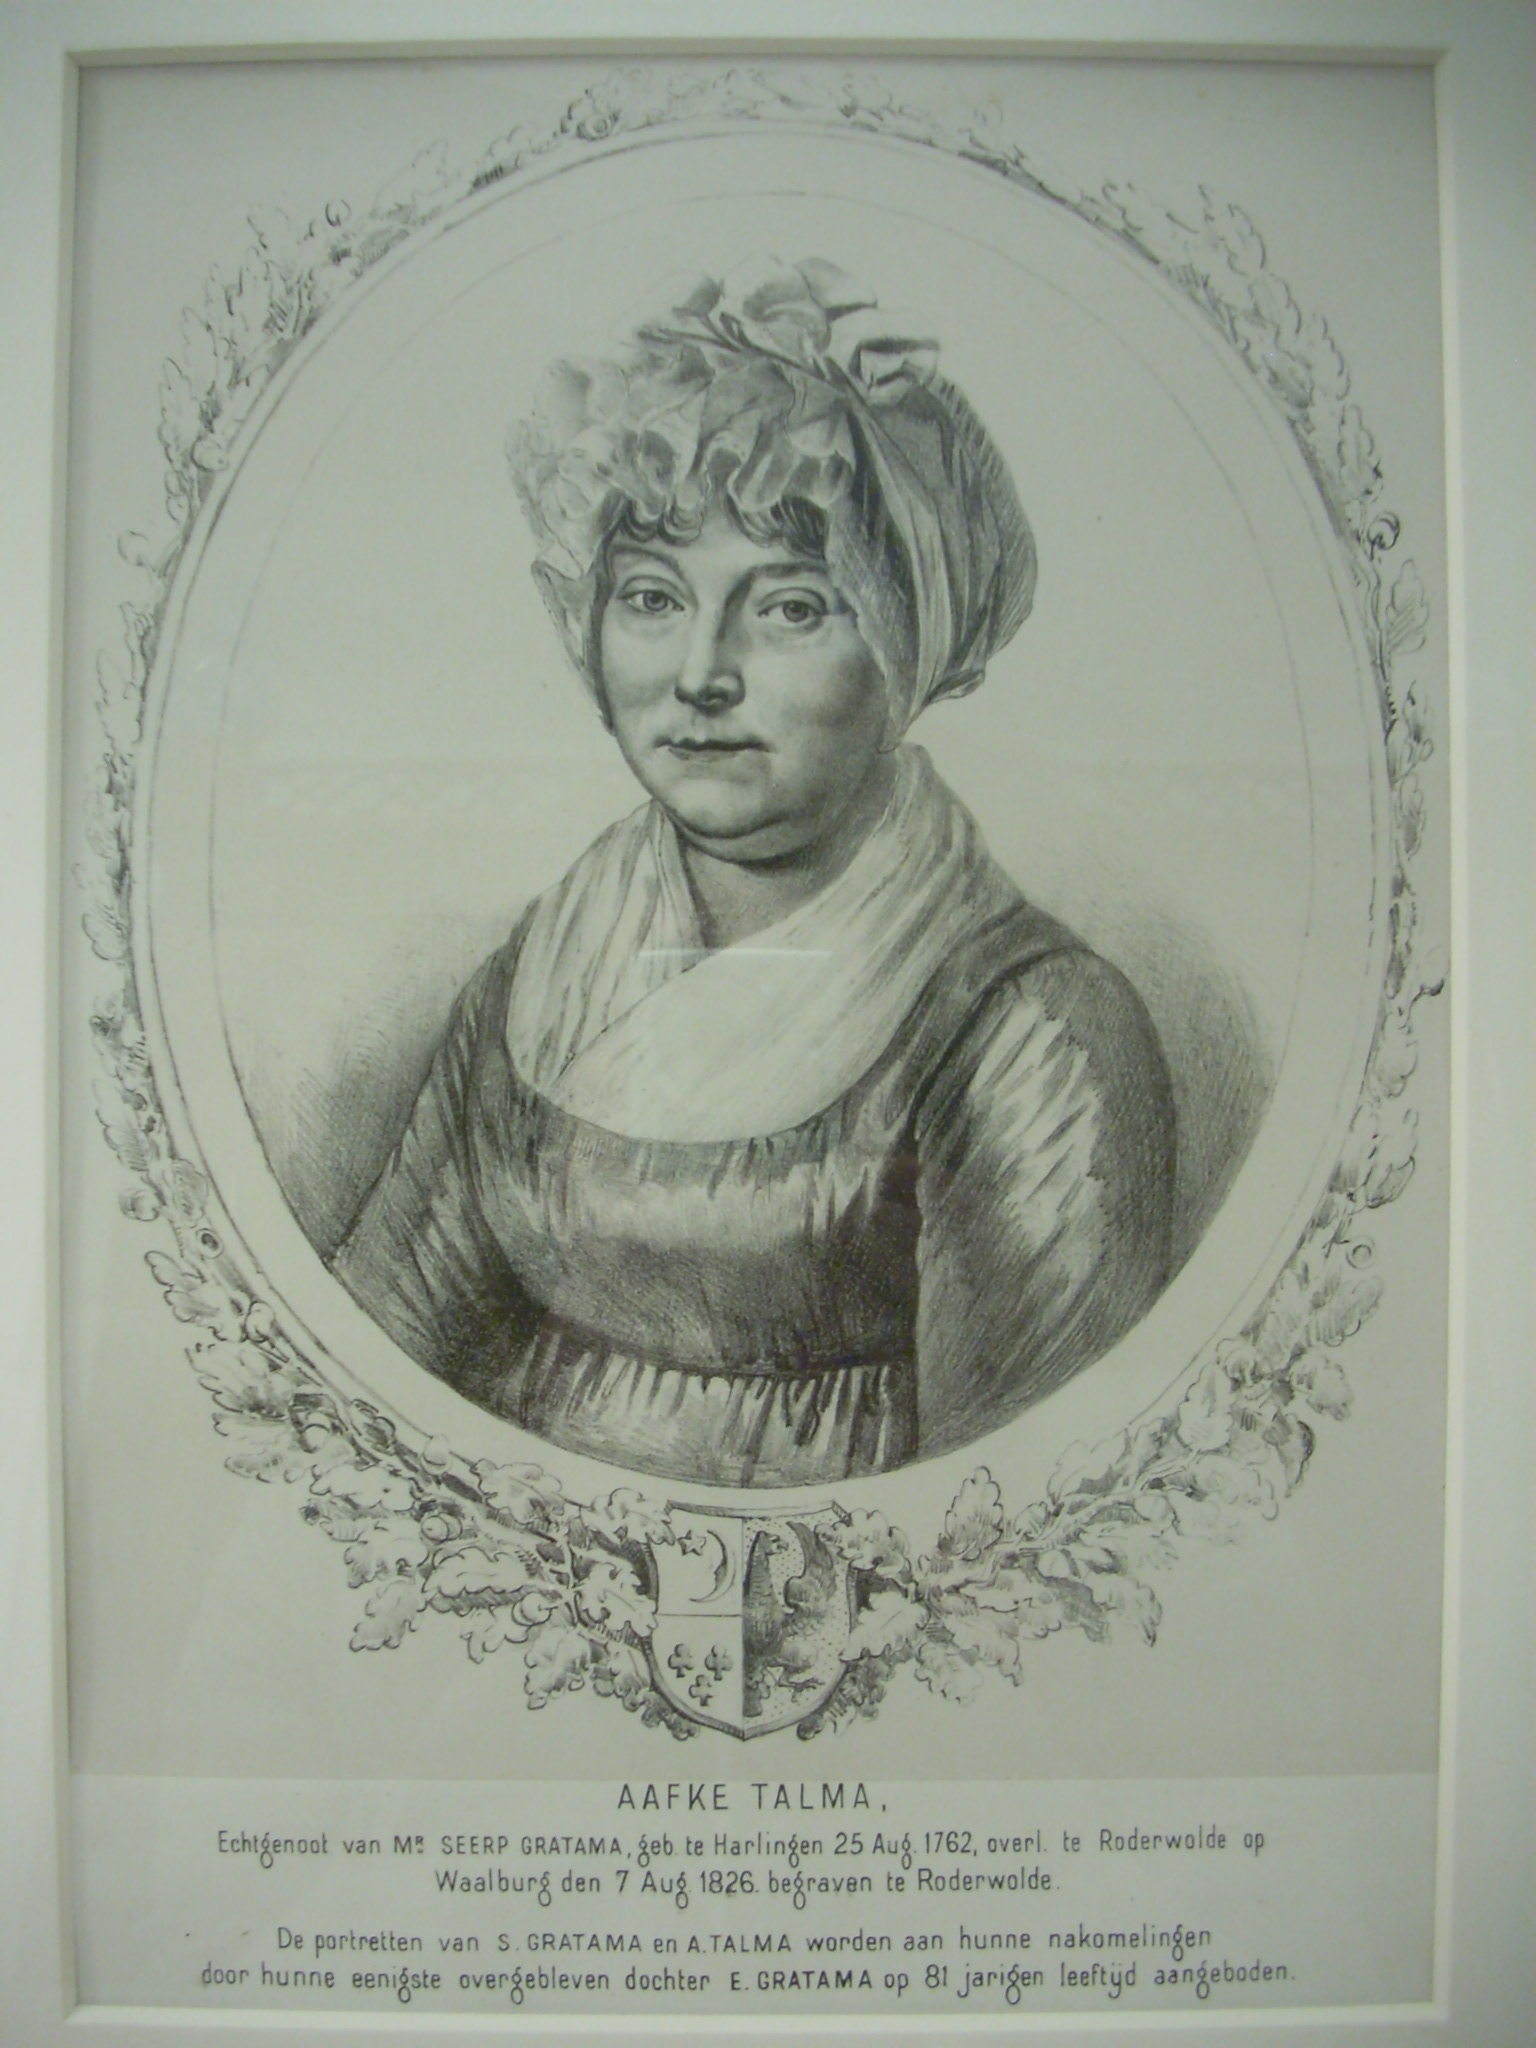 Aafke Talma 1762-1826